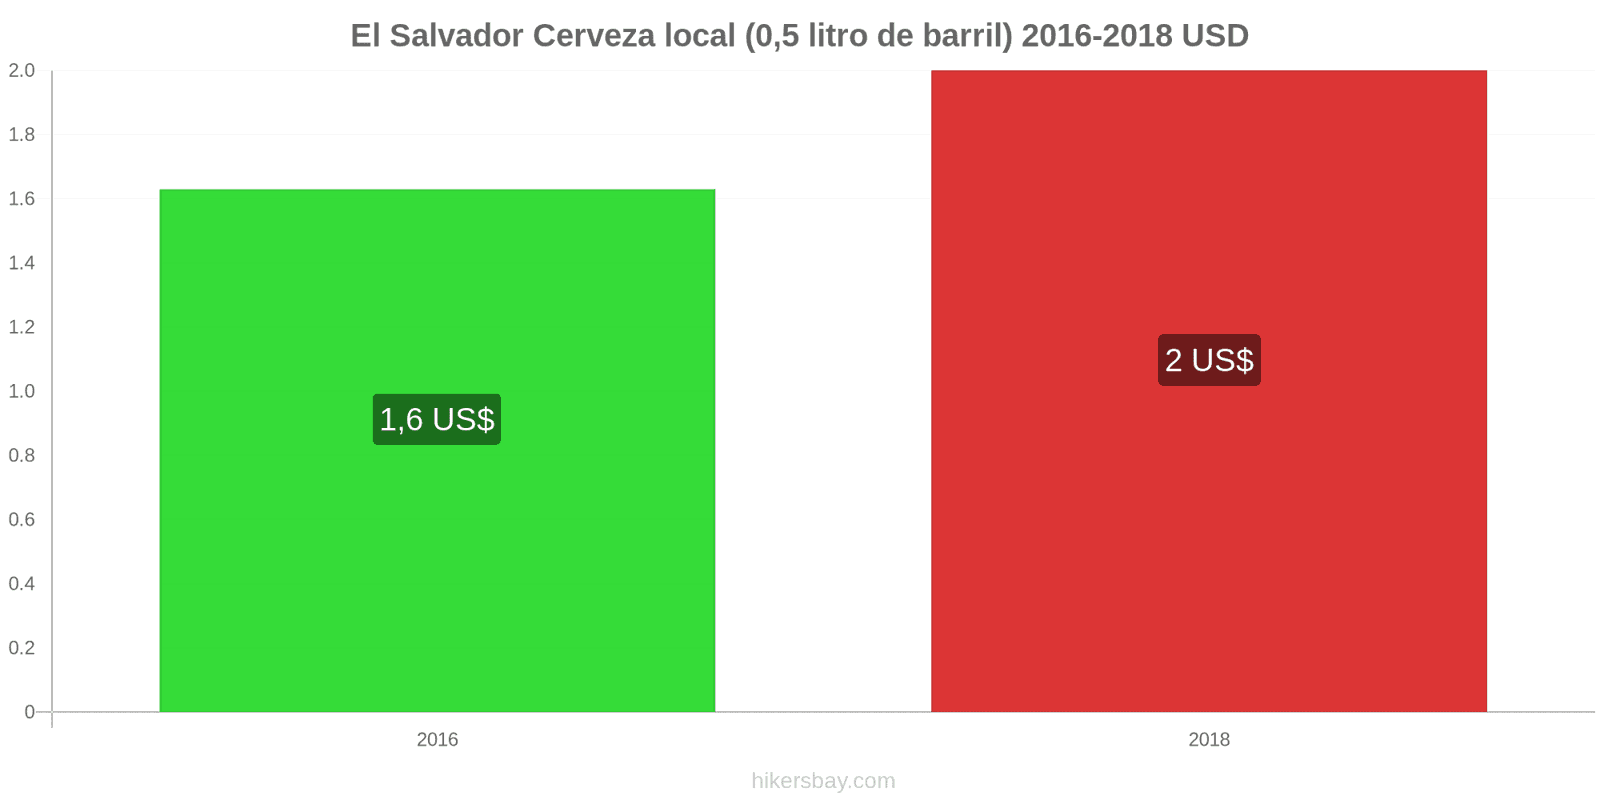 El Salvador cambios de precios Cerveza de barril (0,5 litros) hikersbay.com